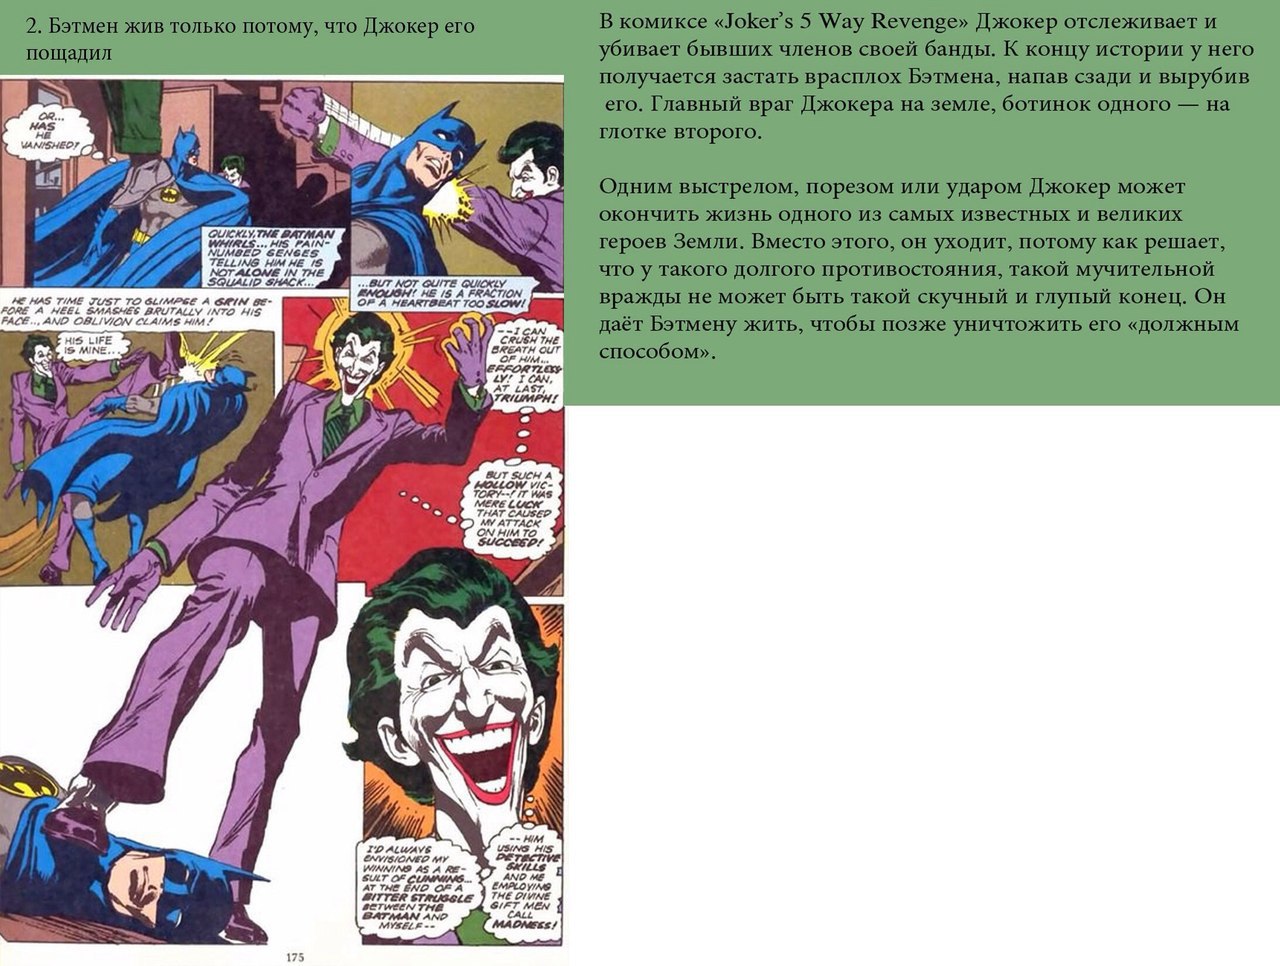 Глупый конец. Первое появление Джокера в комиксах. Джокер интересные факты.